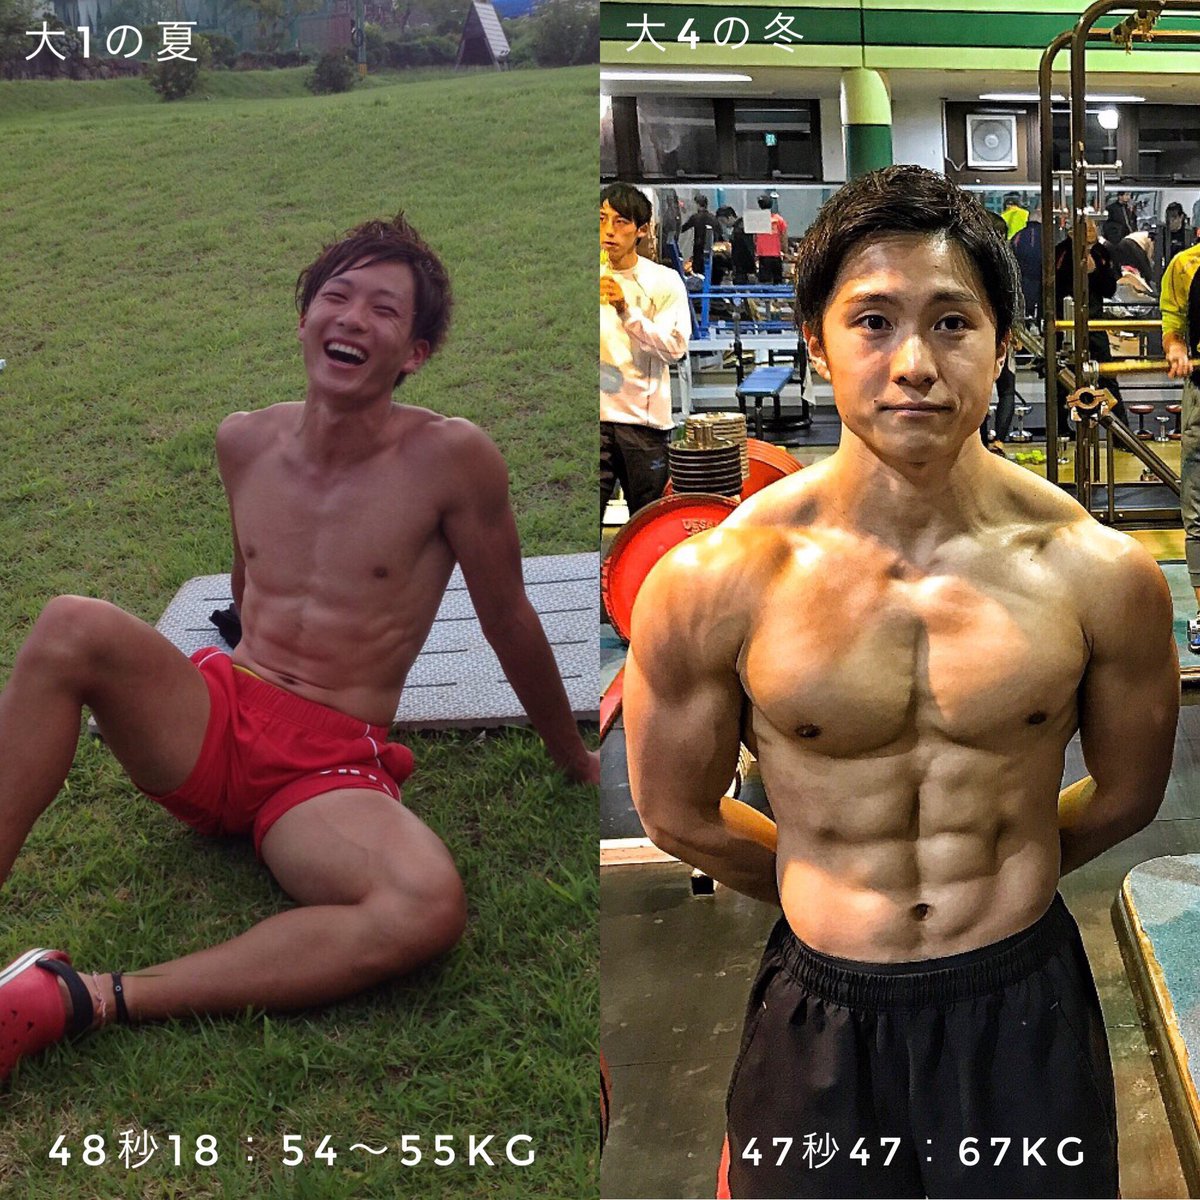 相山 慶太郎 Keitaro Aiyama Sur Twitter 24歳 筋トレ歴9年 特に増えた学生時代でした 陸上部で身長が165cmと低かったので パワーでゴリ押しするためにトレーニングを頑張ったところ約12kg体重が増えました